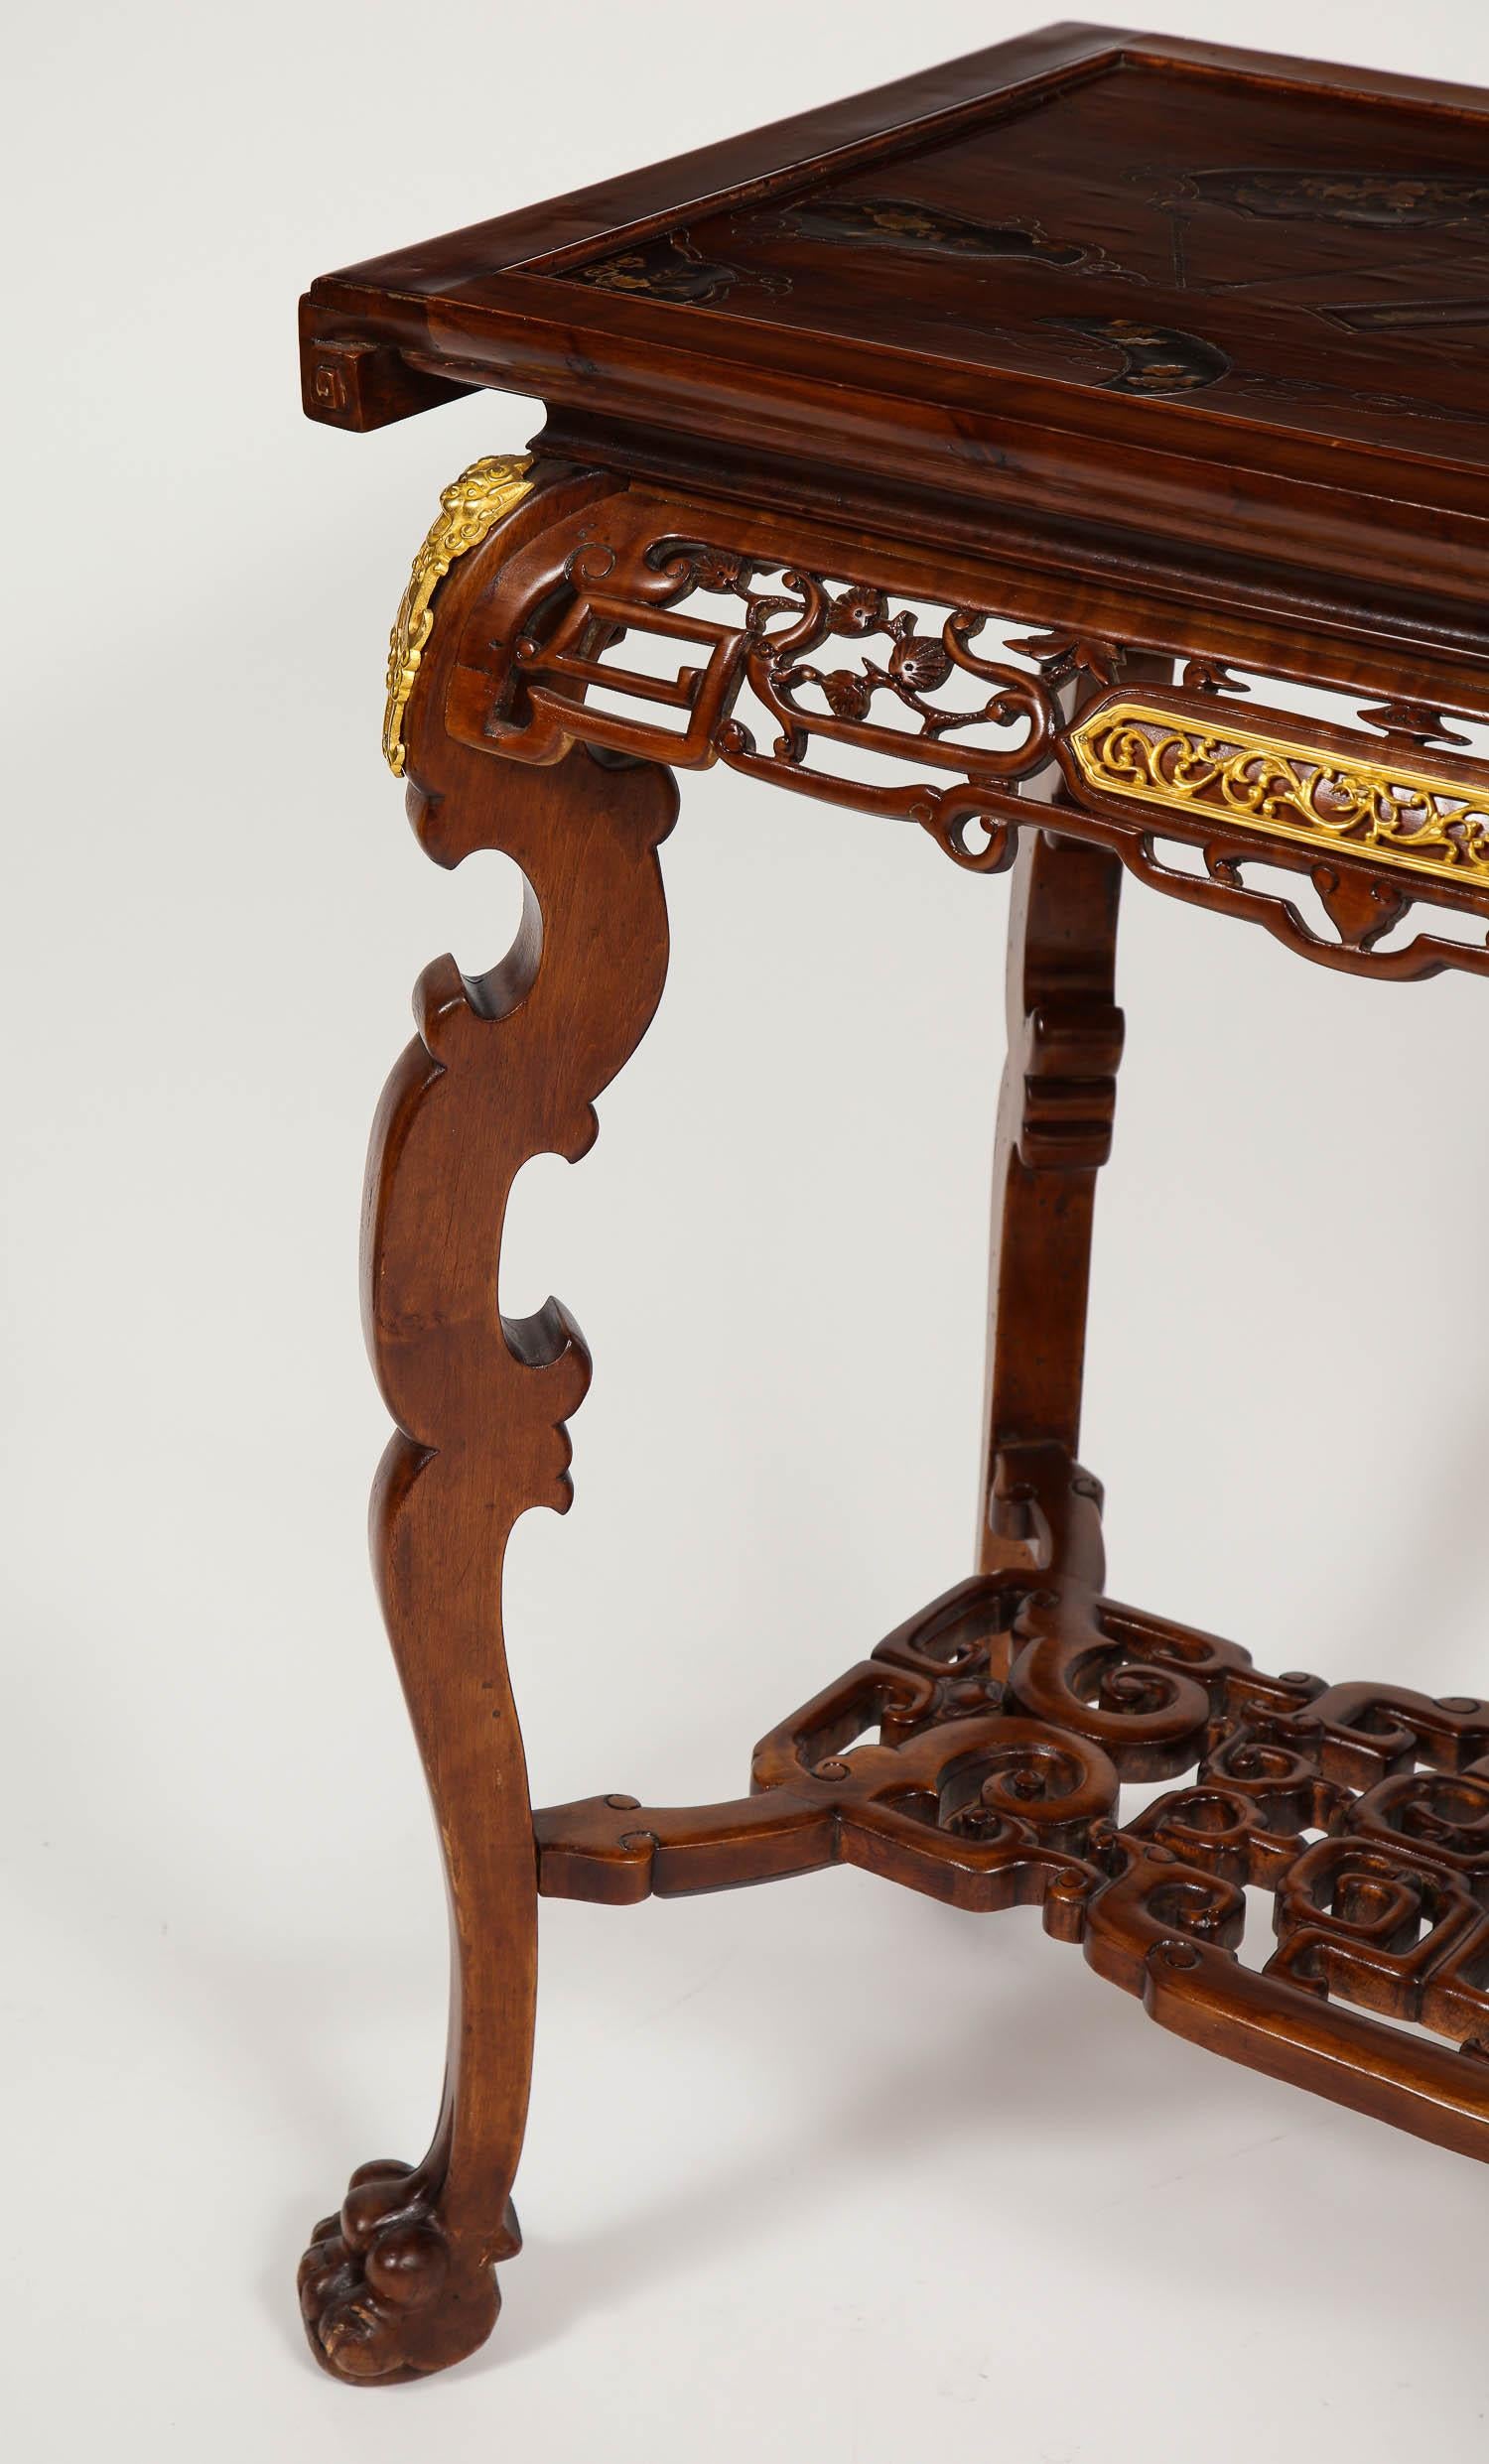 Magnifique table de centre en acajou de style chinoiserie du XIXe siècle, sculptée à la main, avec plateau en marqueterie de nacre, attribuée à Gabriel Viardot. Cette magnifique table en acajou a été sculptée à la main avec un décor de chinoiserie